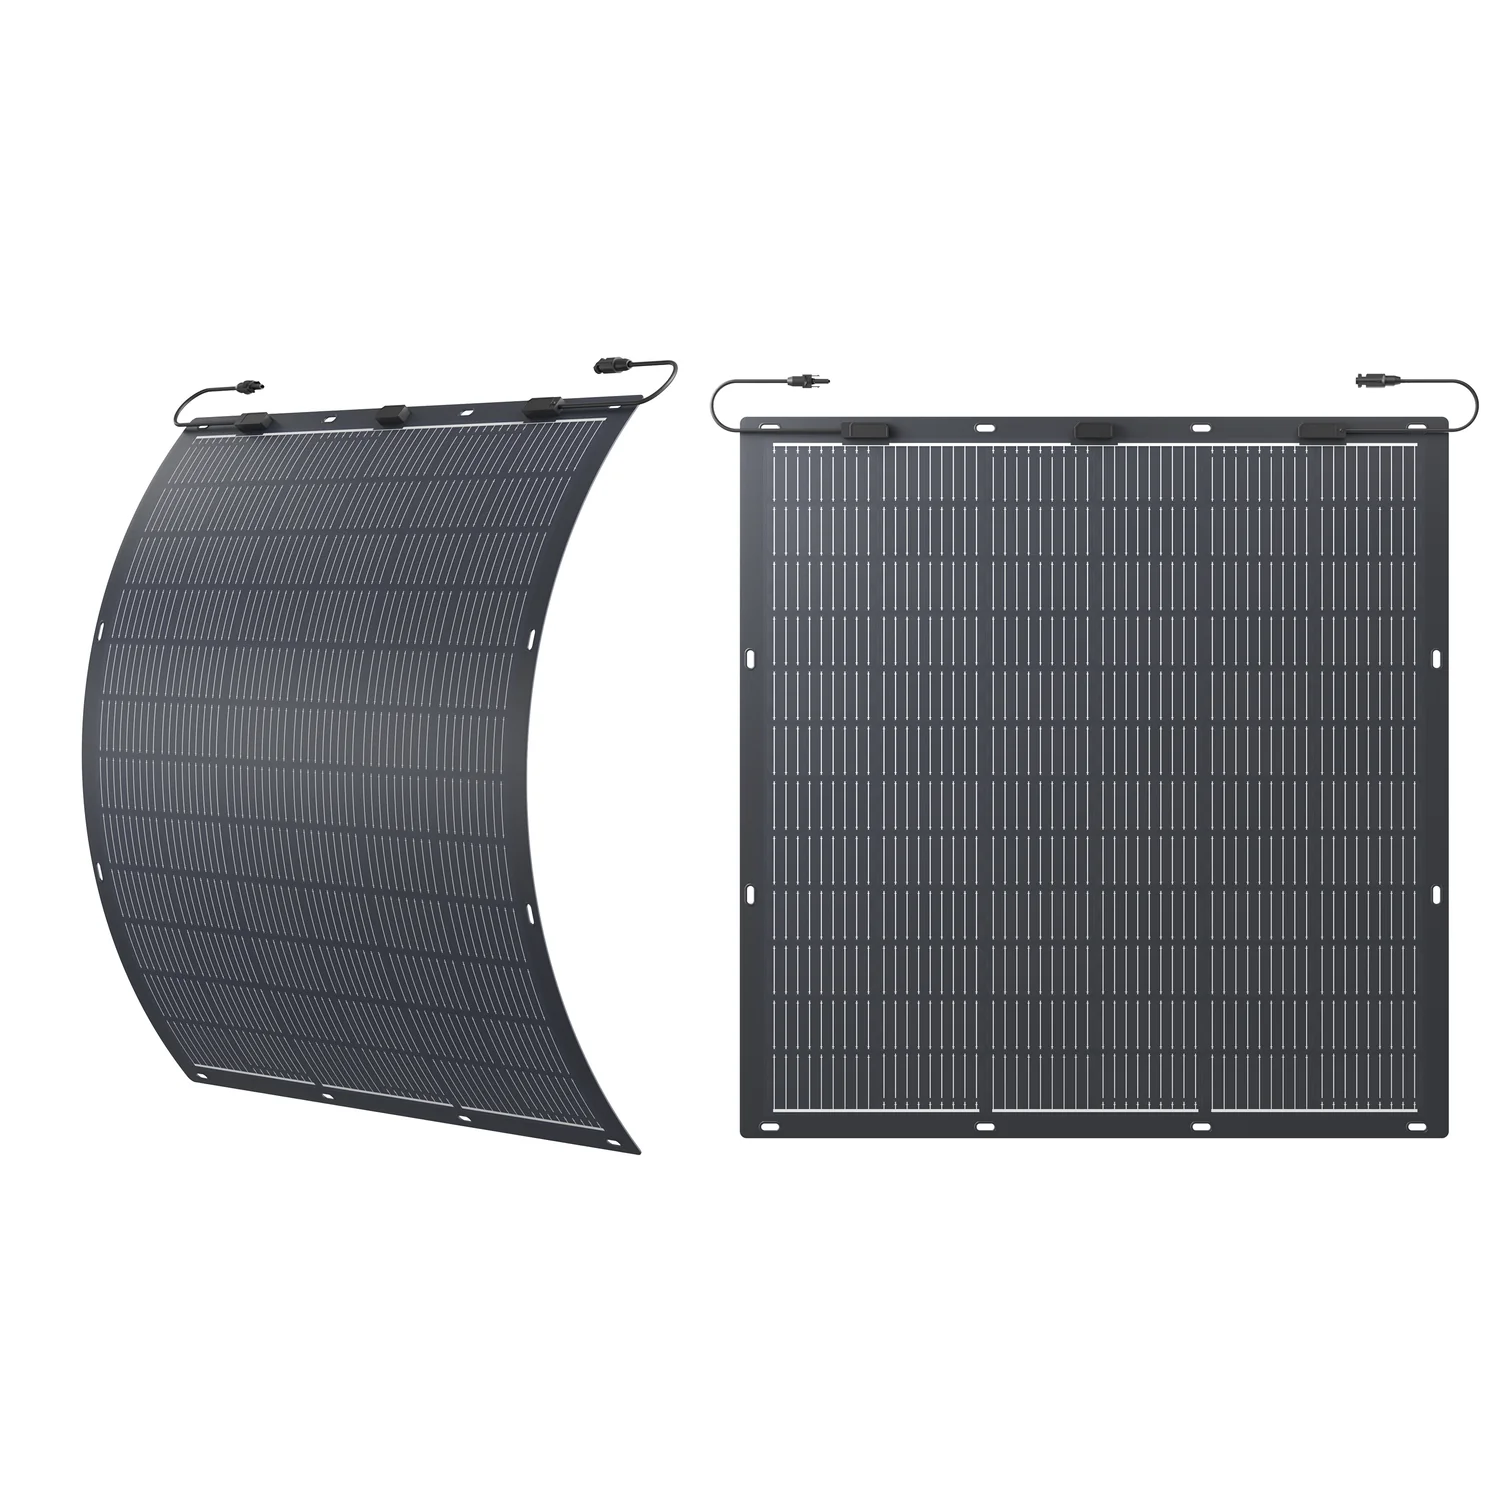 Zendure Balkonkraftwerk, Flexibel Solarpanel 2X 210W(420W), 41V/5A Solareingang, Monocrystalline Silicon Solarmodule, IP67 (für Gewerbekunden mit 19% MwSt., kein Versand - nur Abholung) 